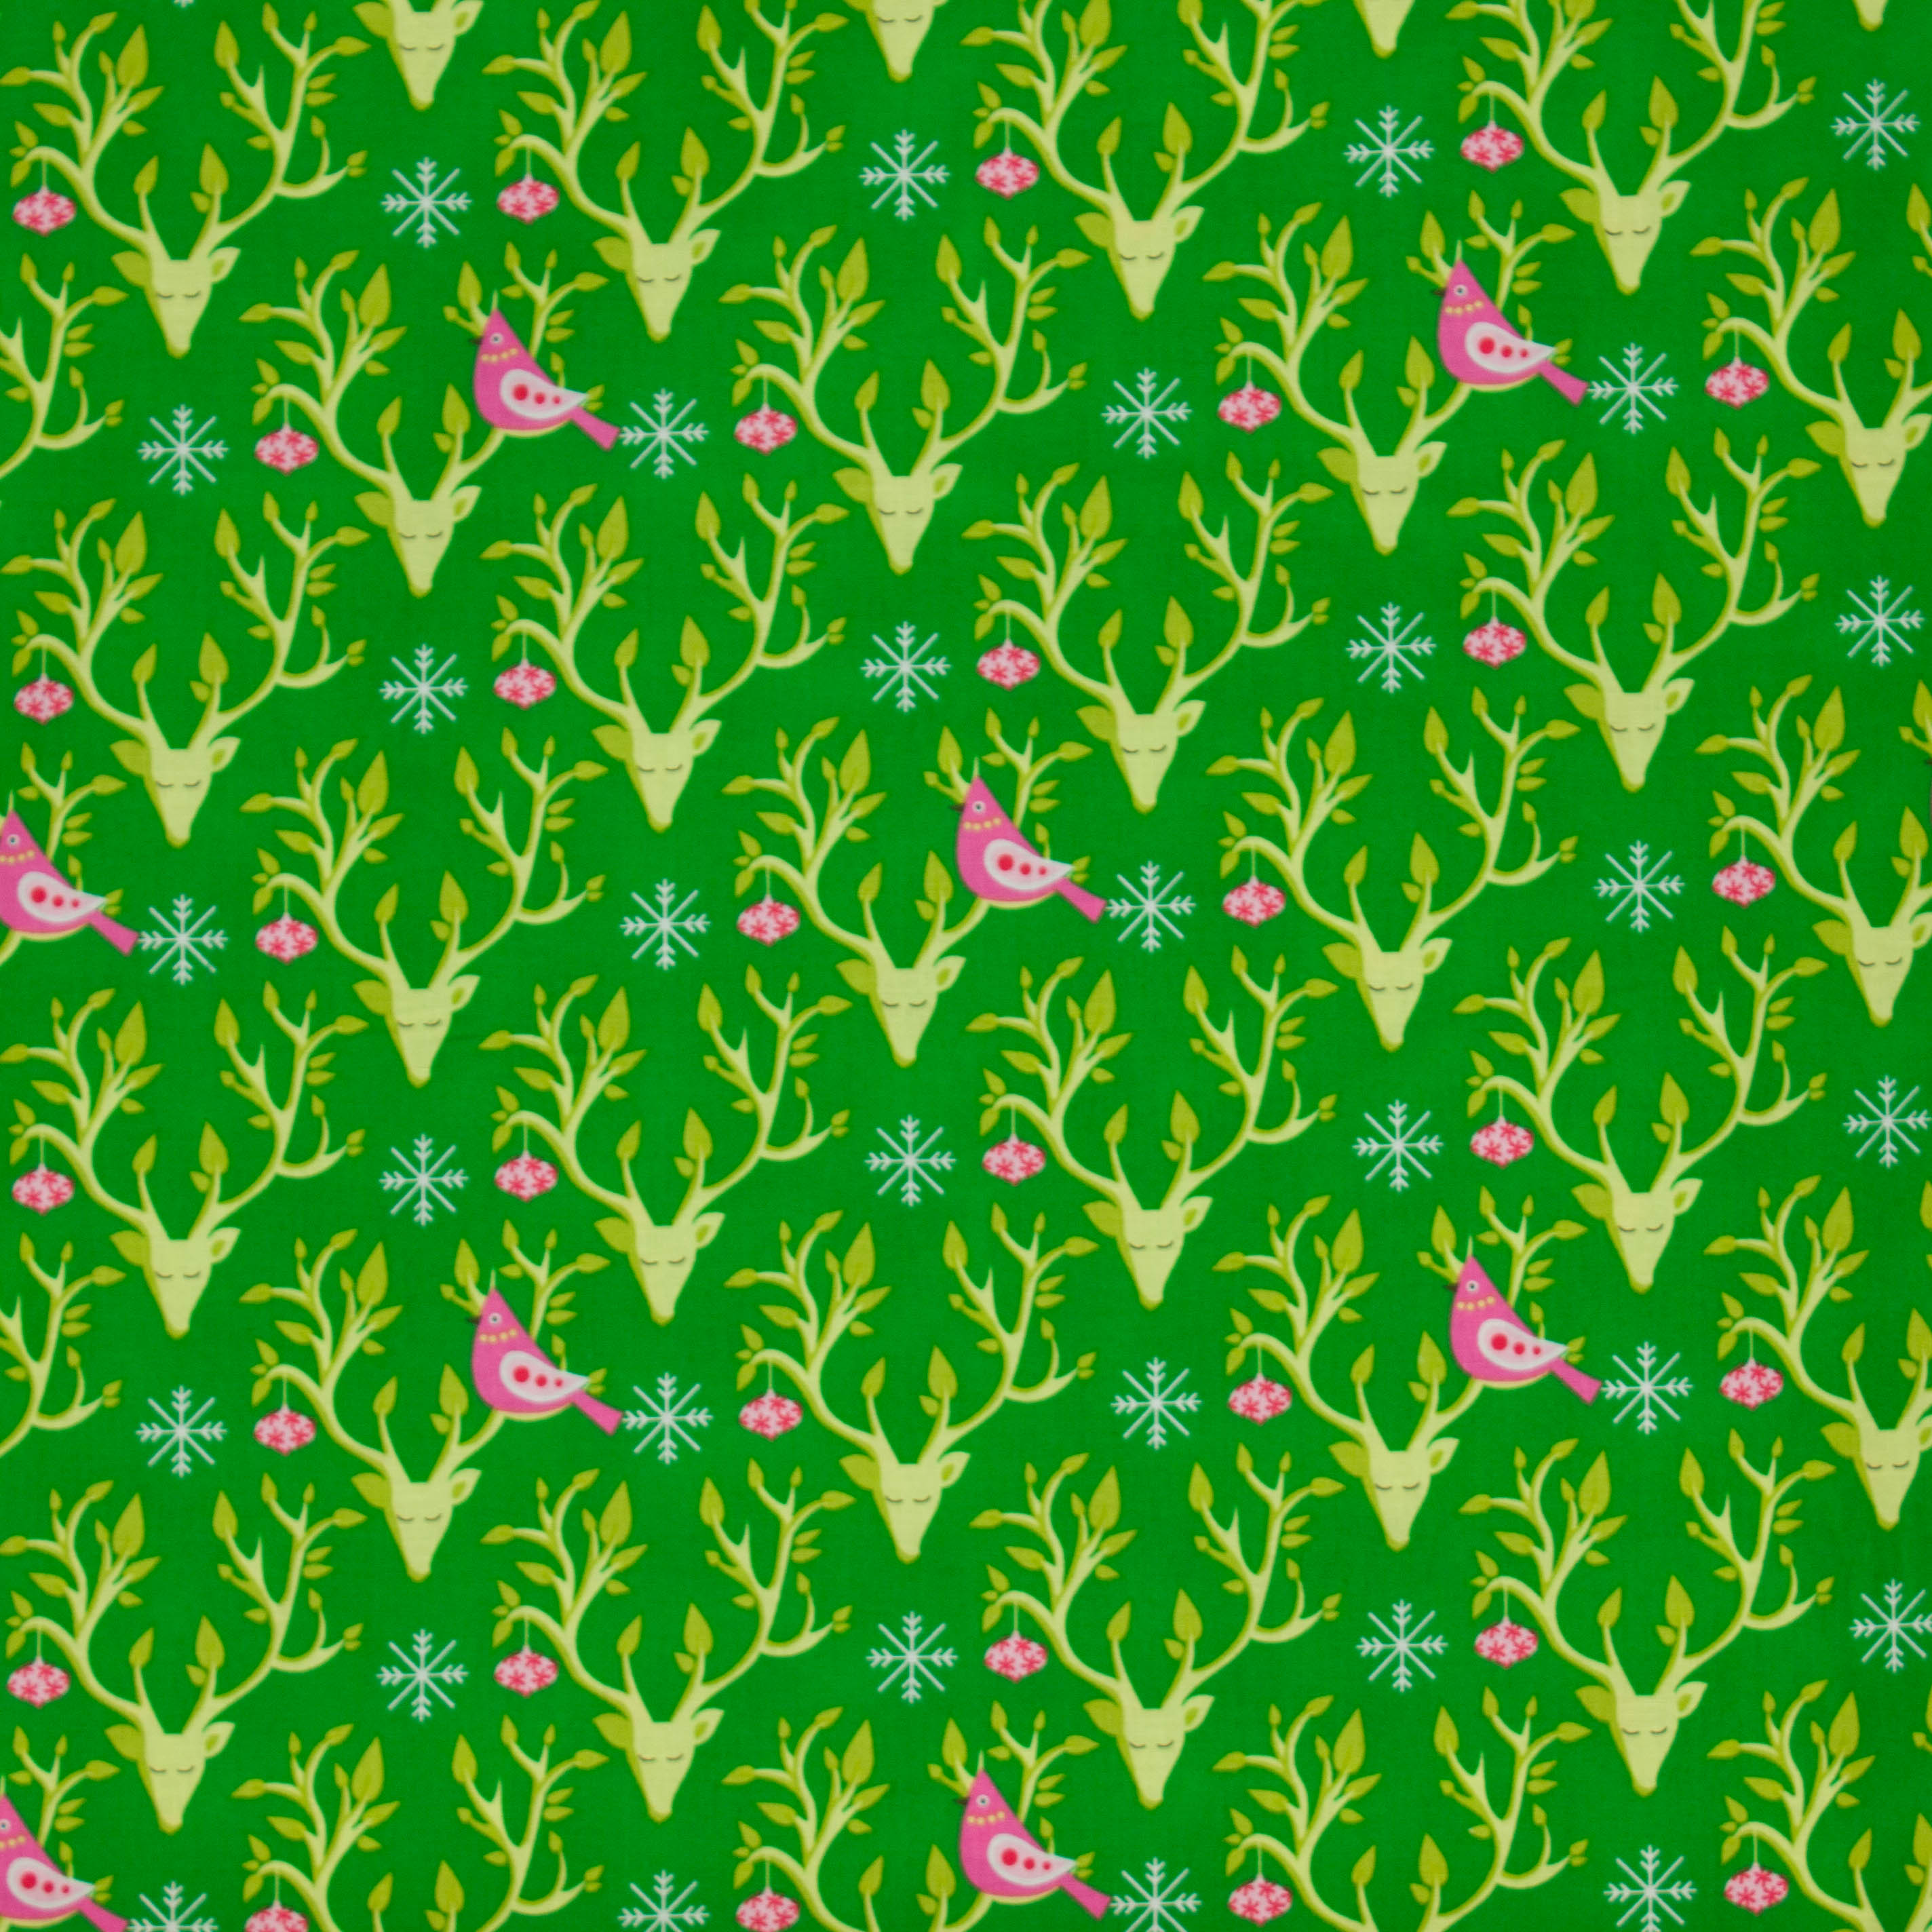 Katoen groen met rendieren en roze vogels